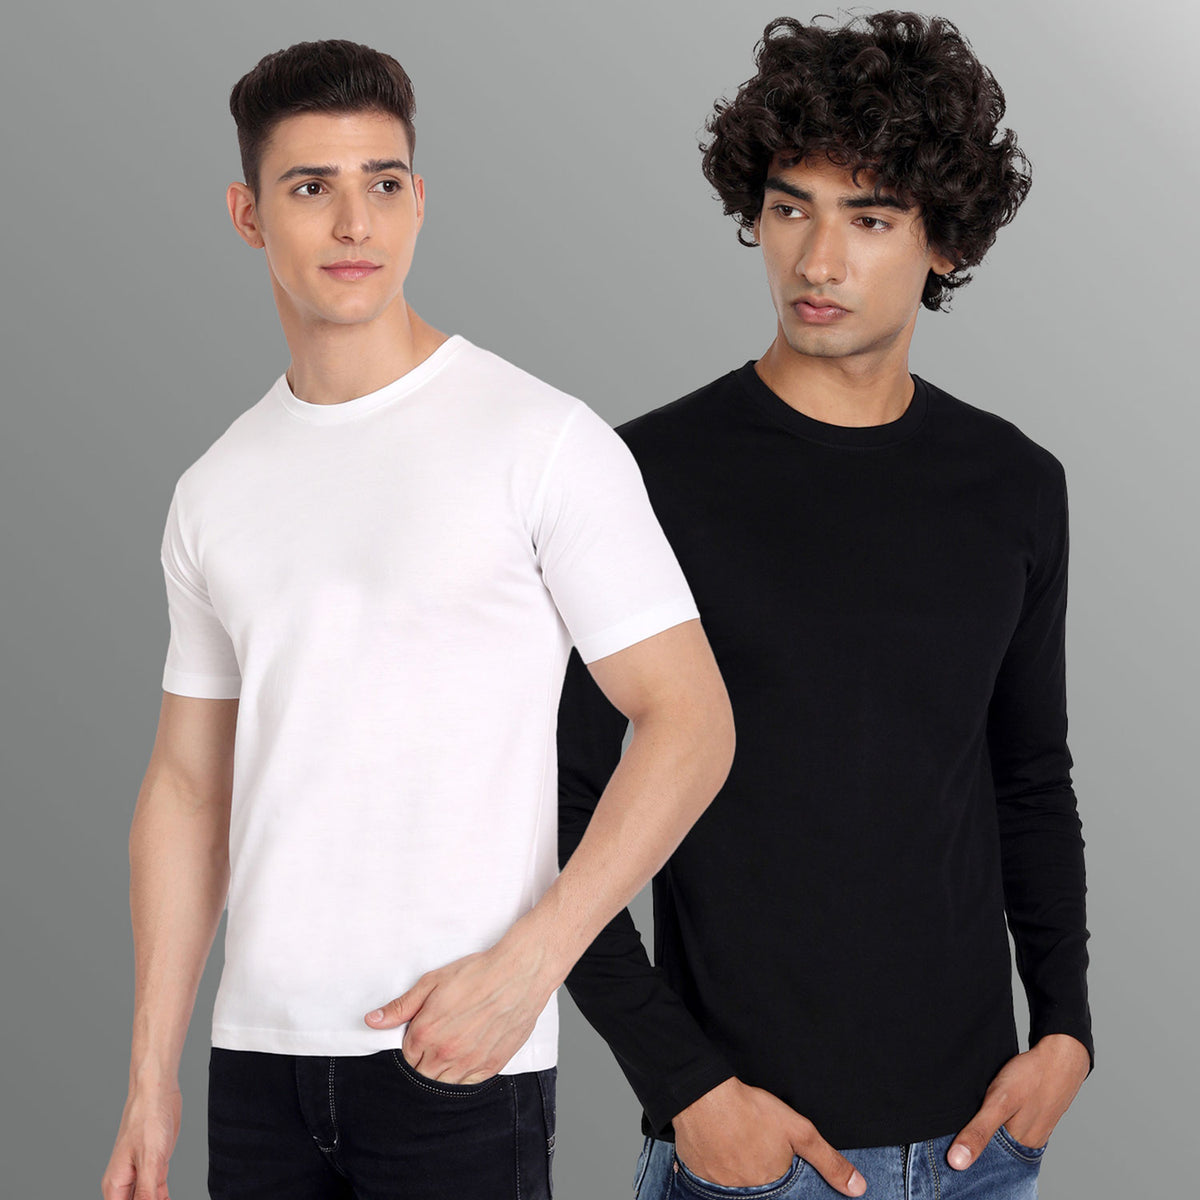 Mens Black and White Full Sleeves Shirt Combo